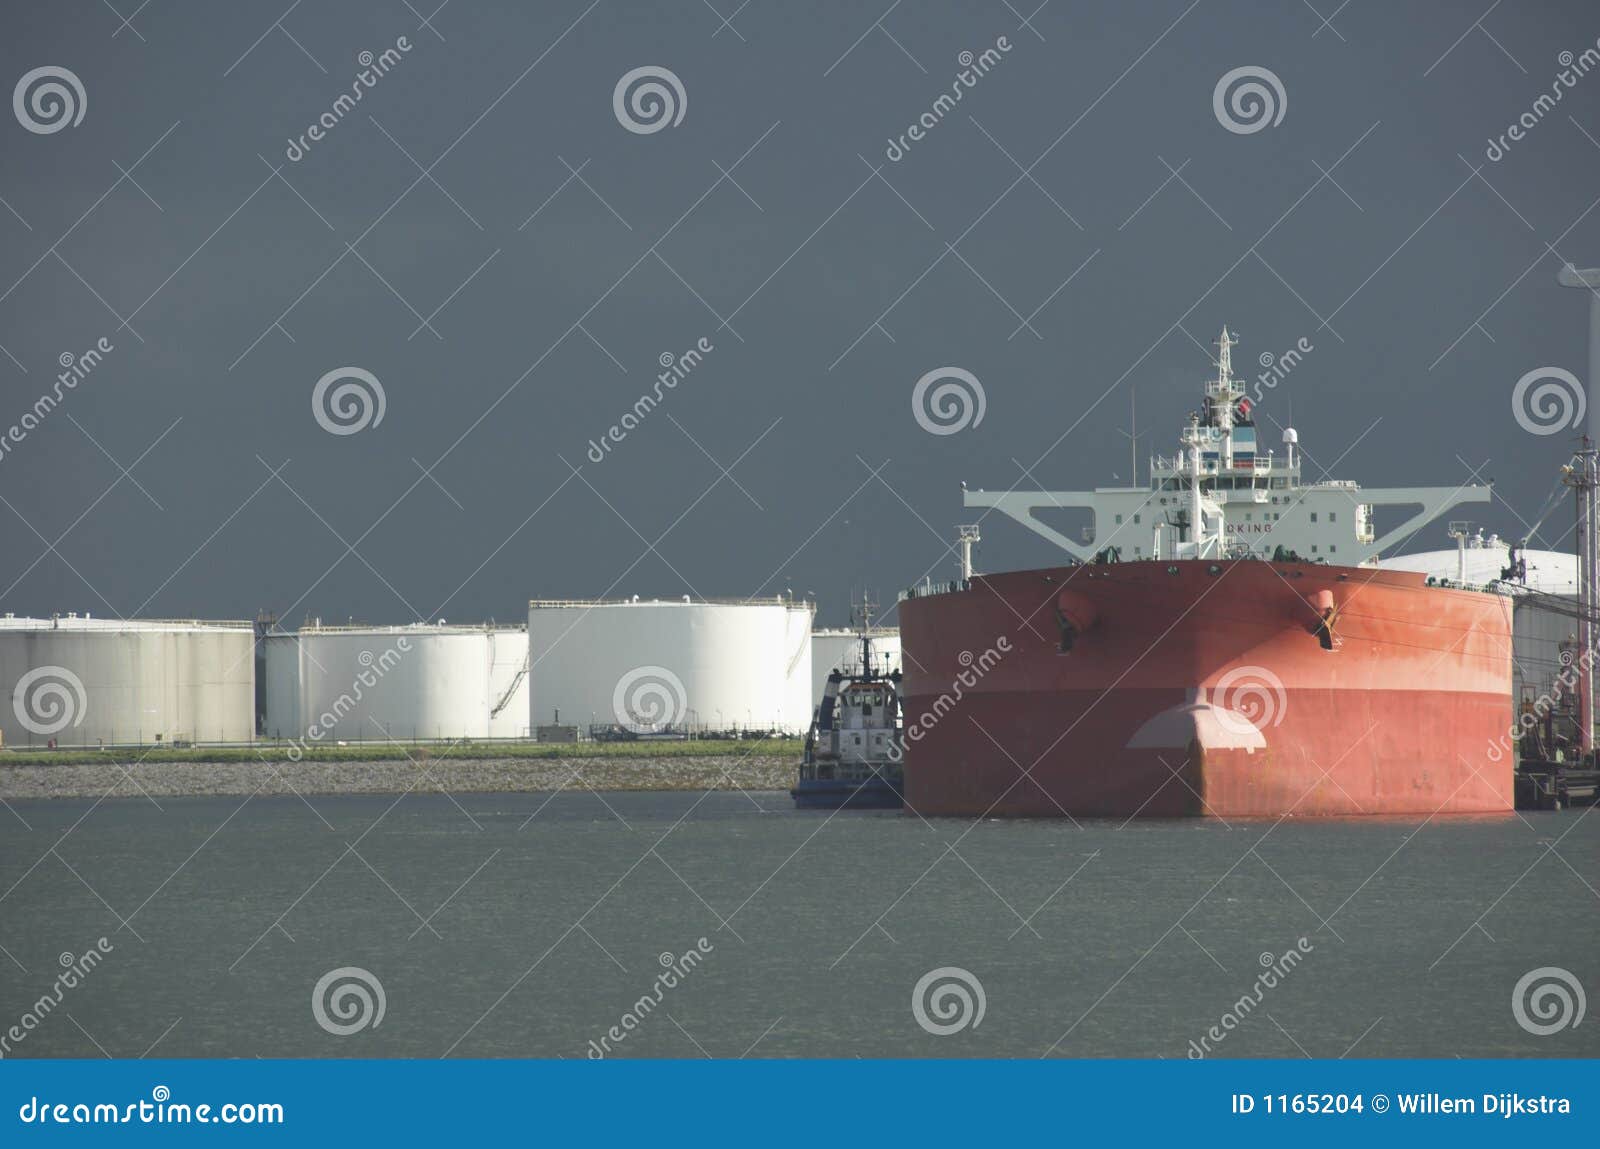 oil tanker in harbour